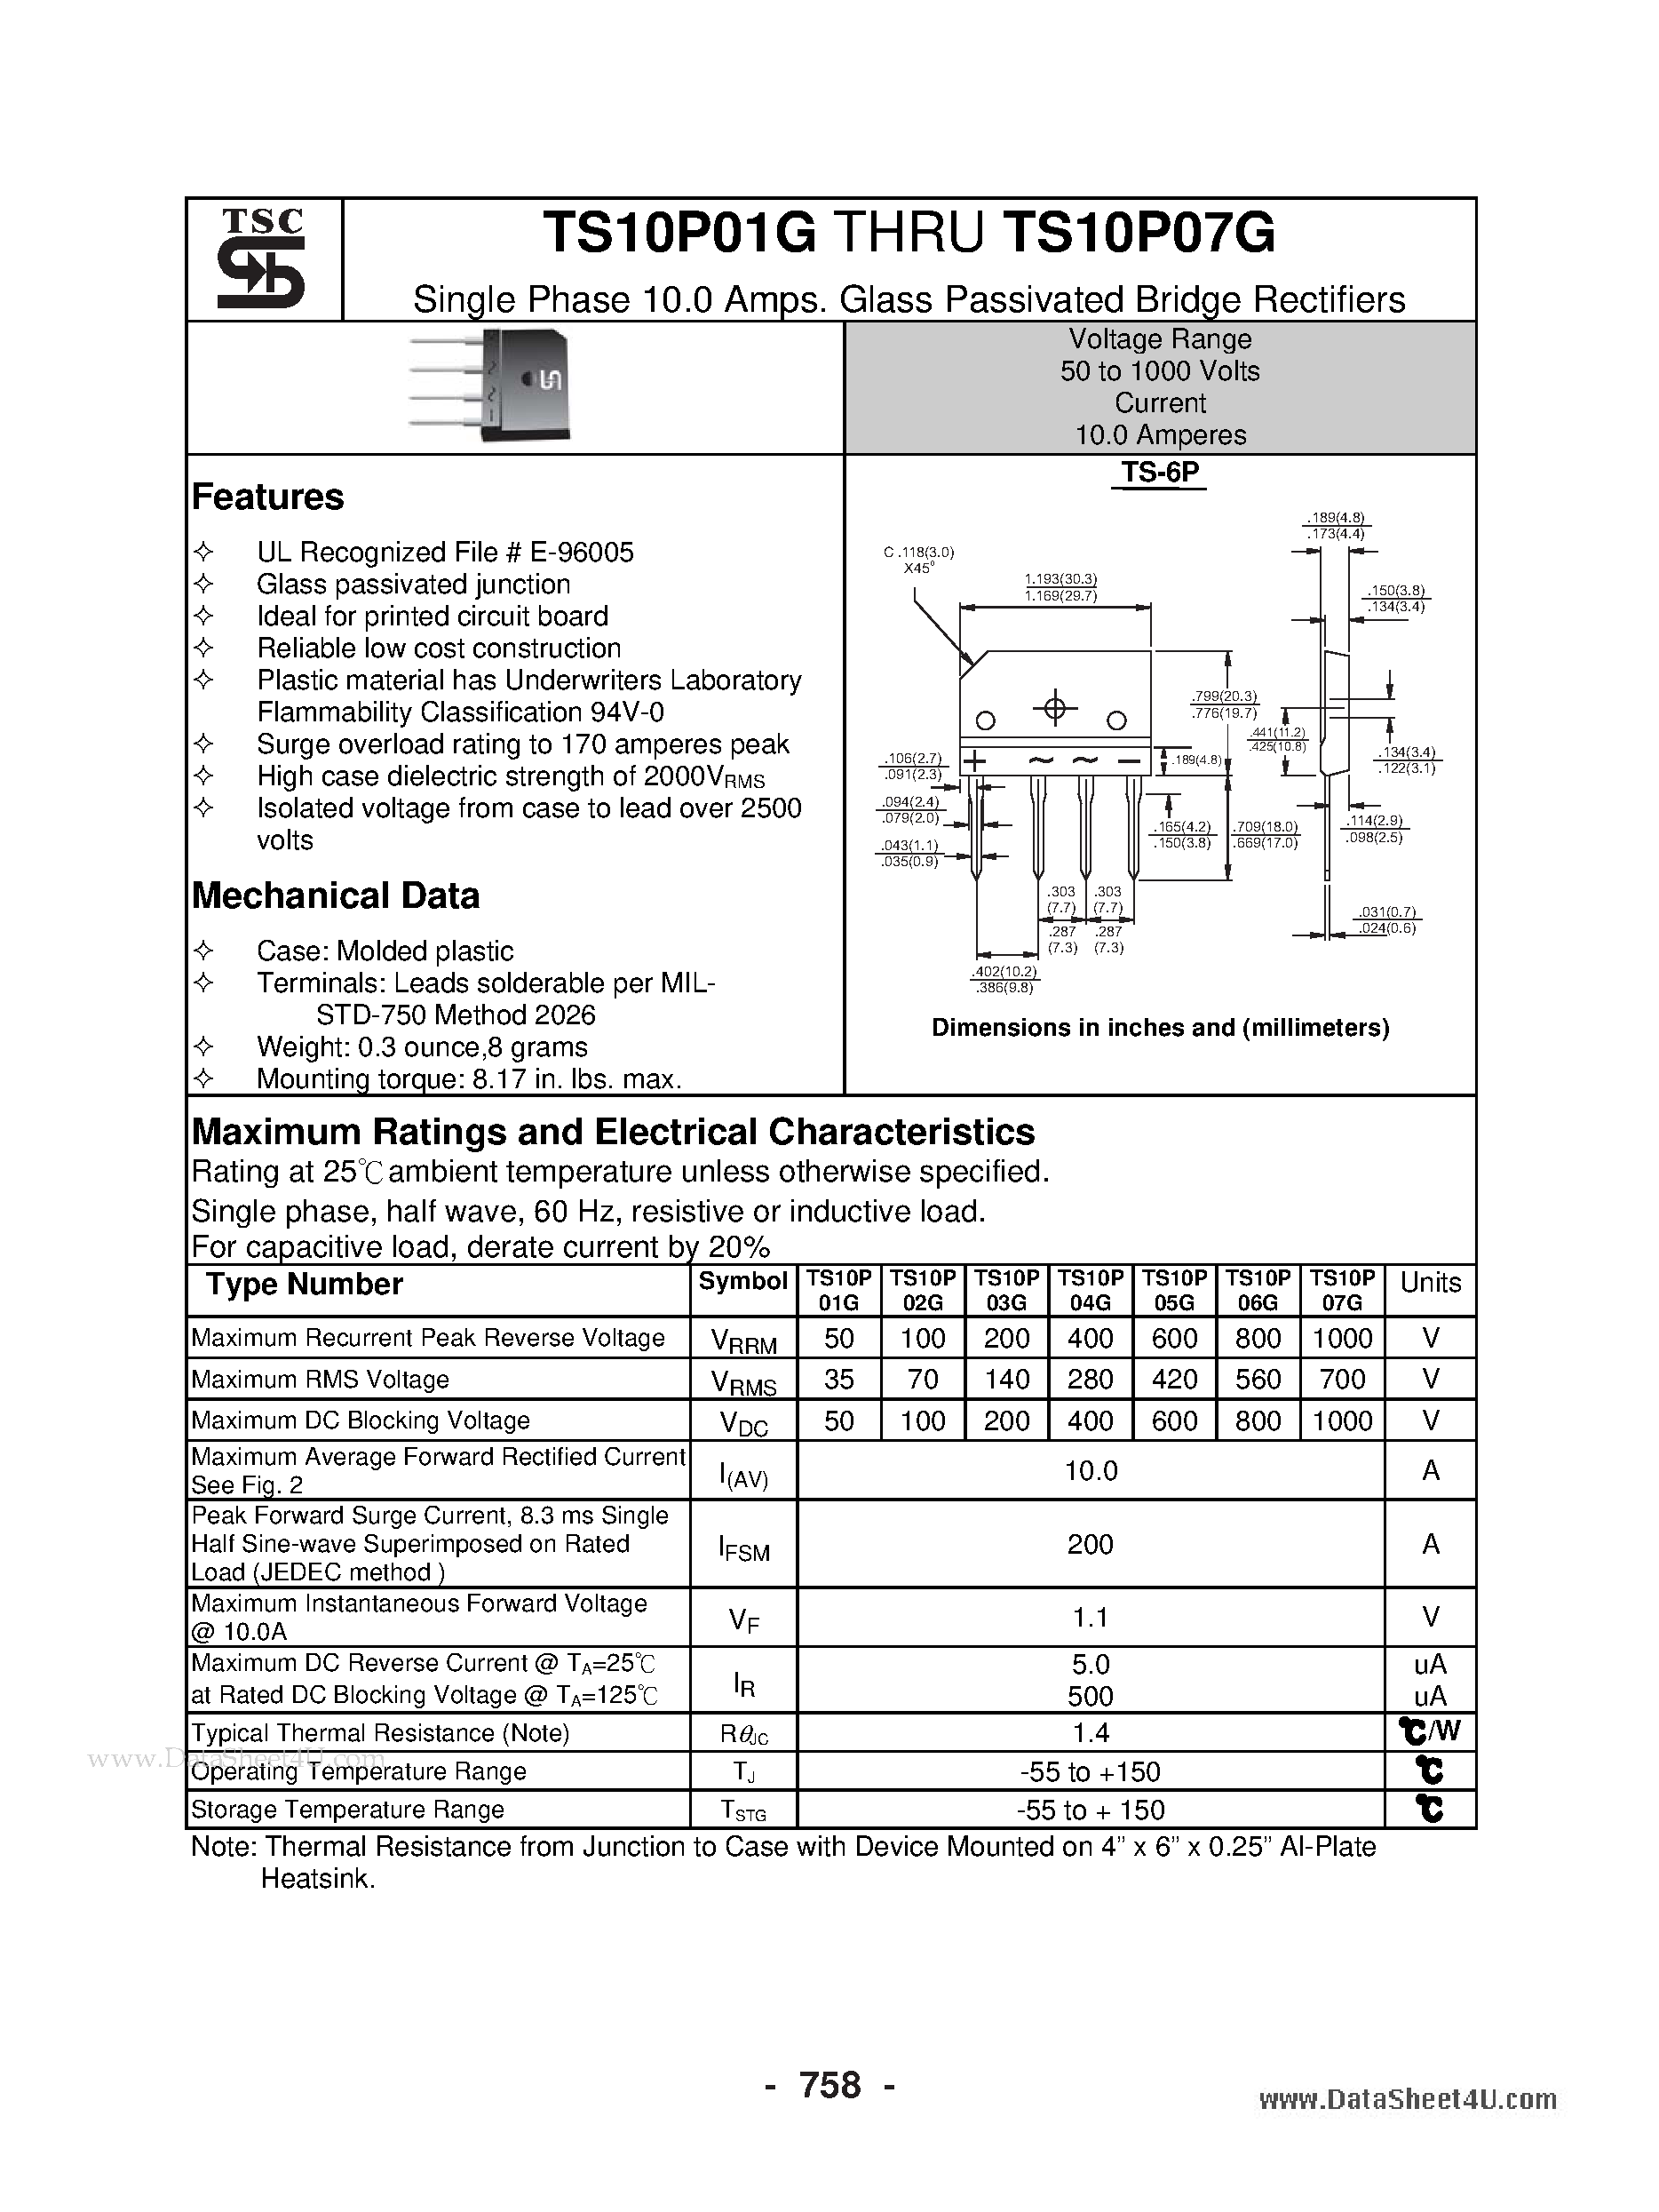 Даташит TS10P01G - (TS10P01G - TS10P07G) Glass Passivated Bridge Rectifiers страница 1